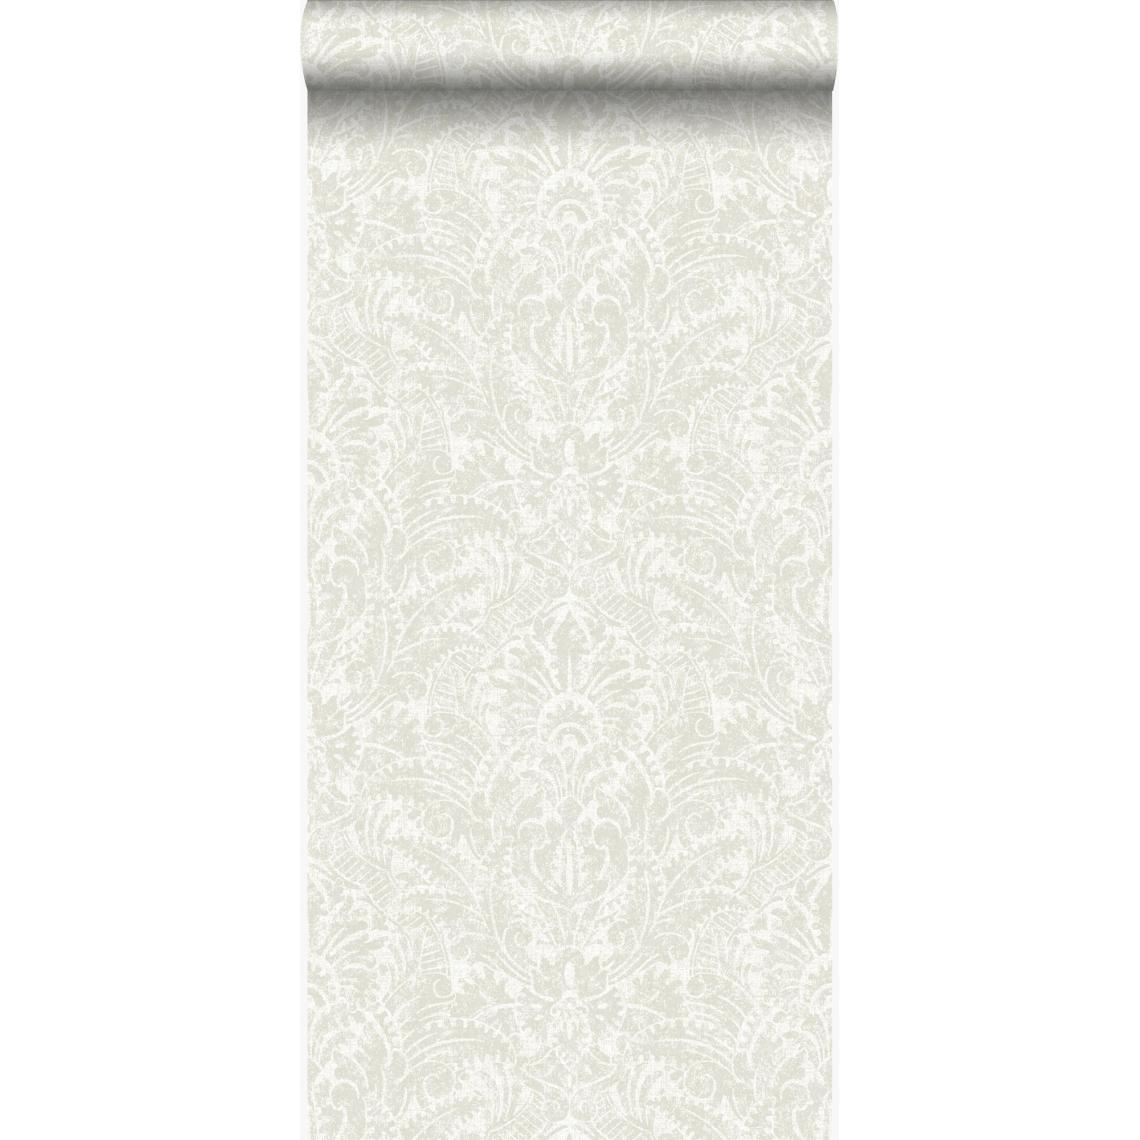 Origin - Origin papier peint ornement blanc cassé - 347306 - 53 cm x 10,05 m - Papier peint